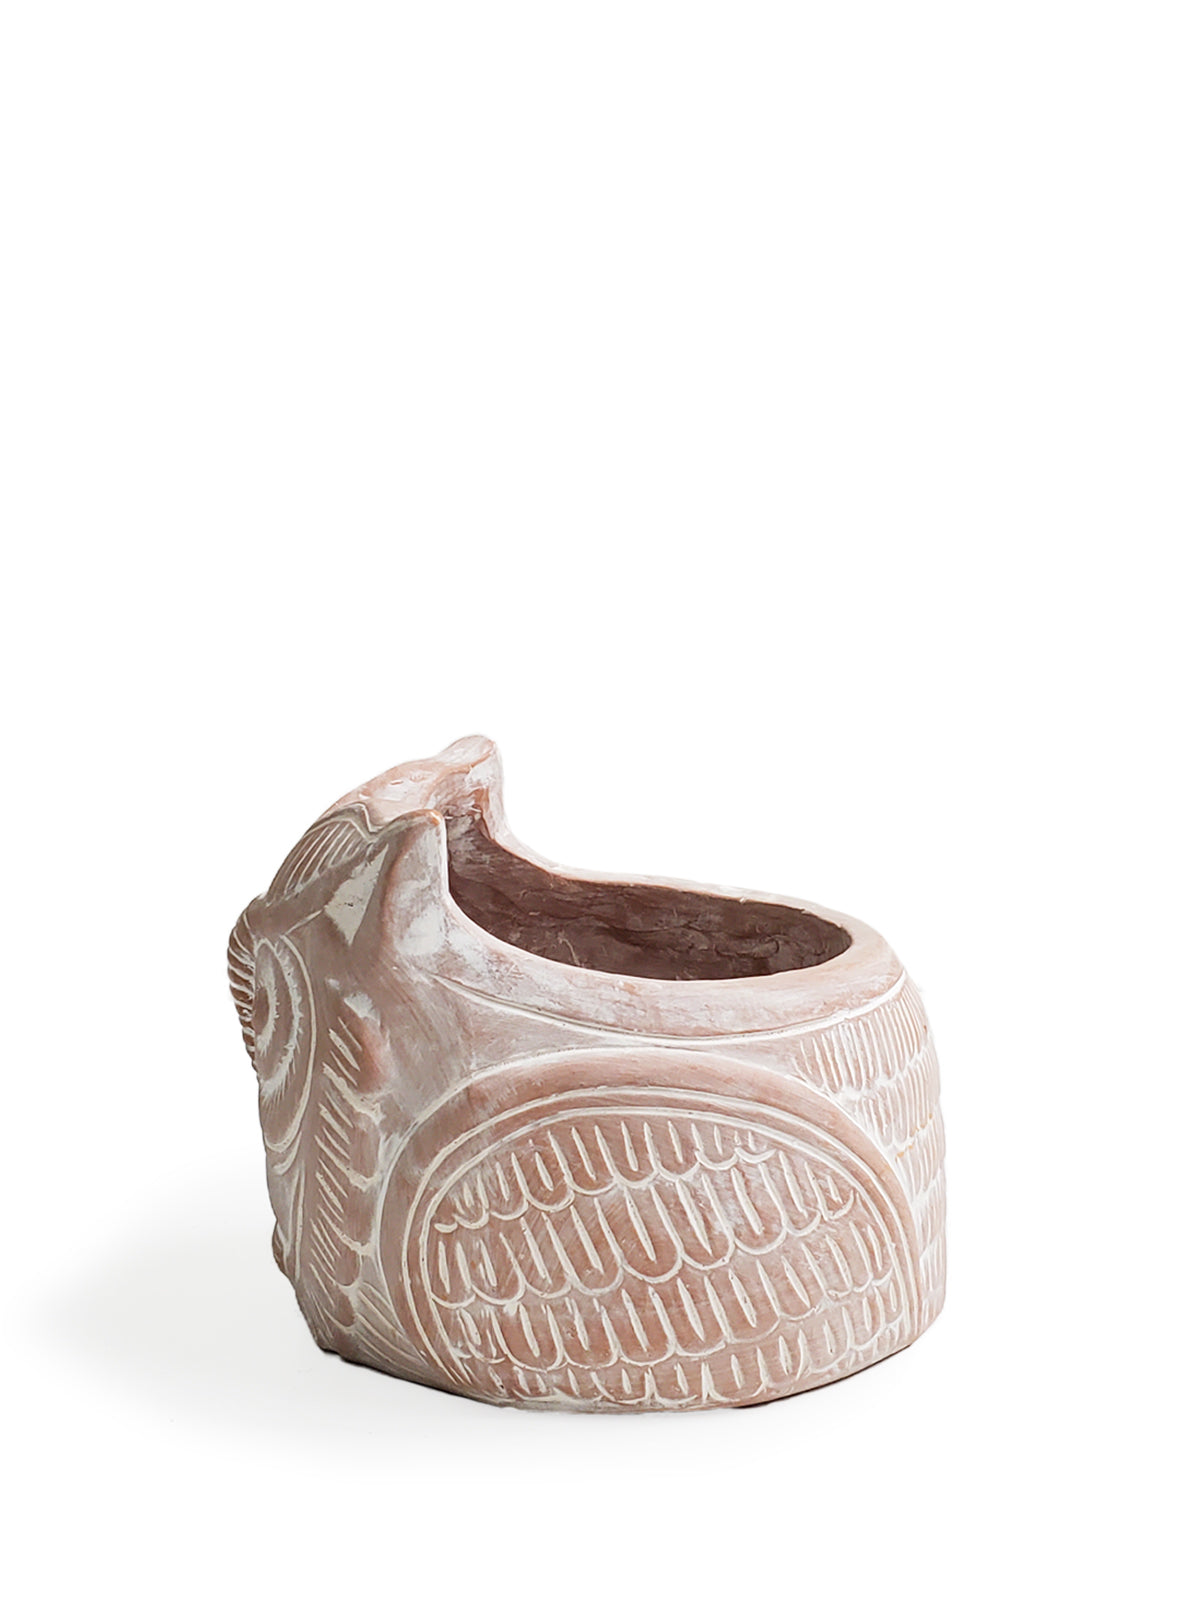 Terracotta Pot - Horned Owl-7